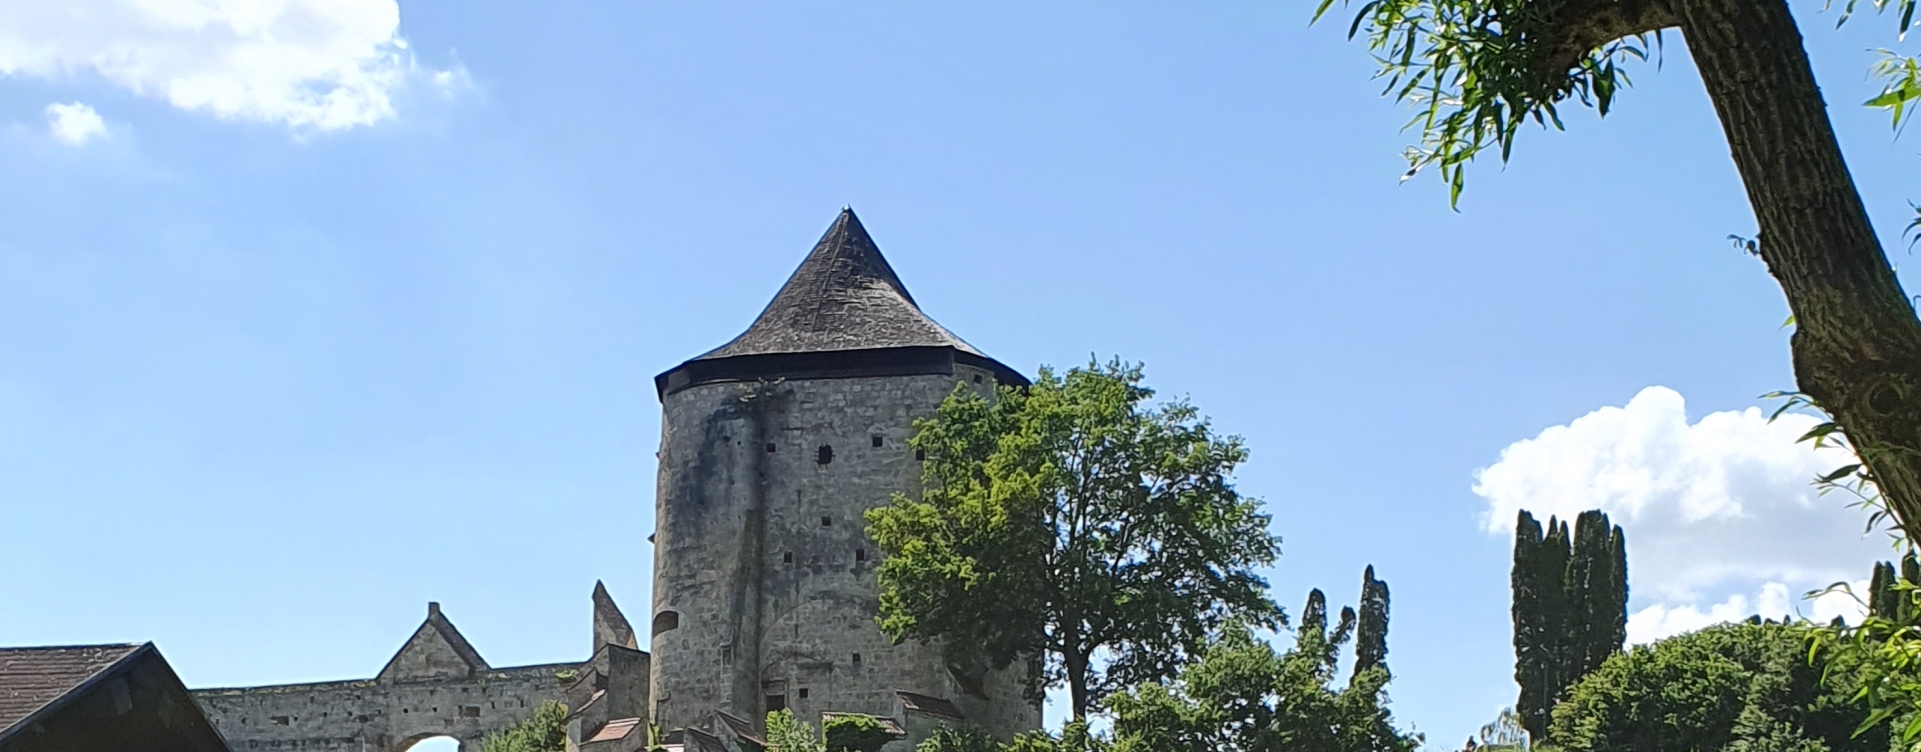 Pulverturm in Burghausen vom Wöhrsee aus